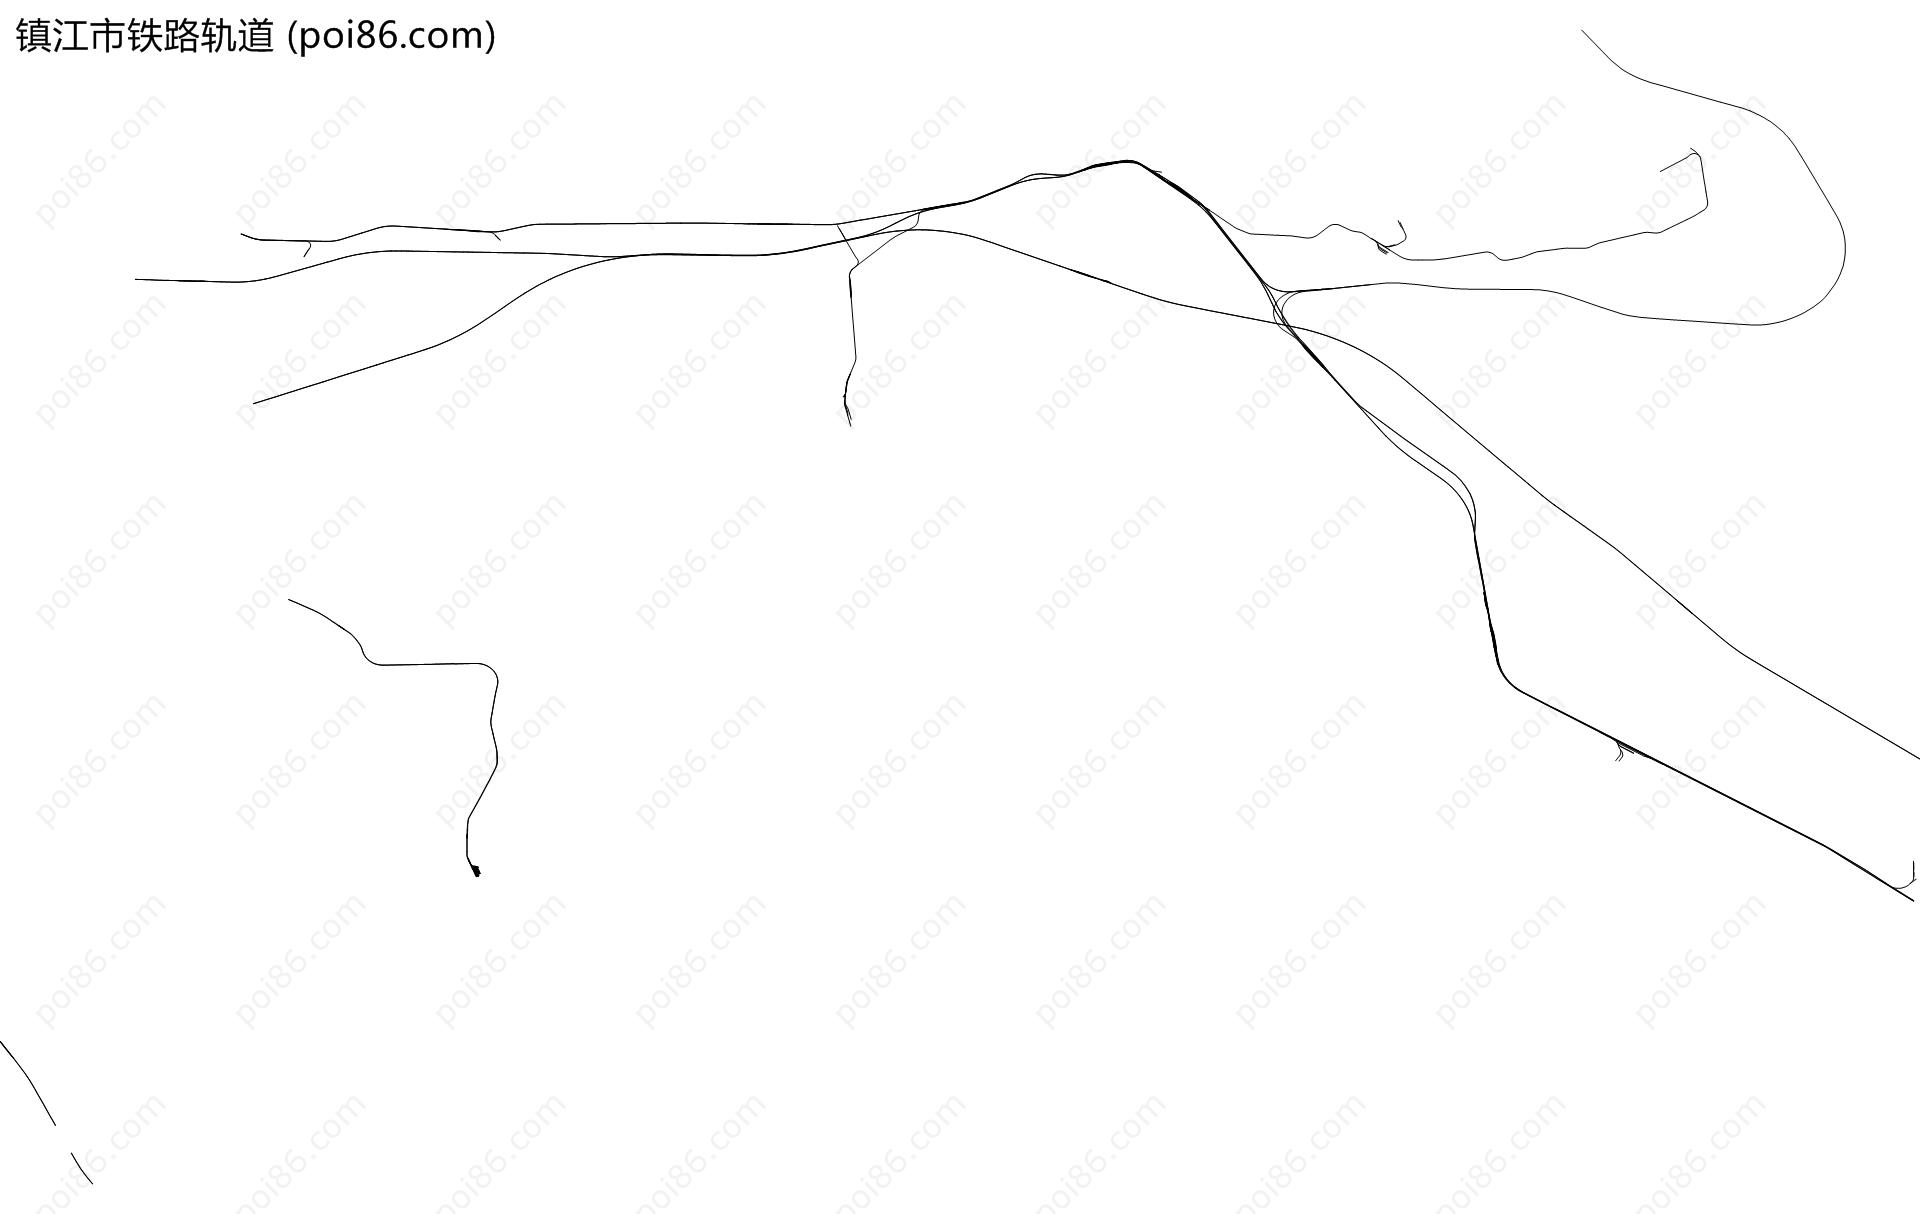 镇江市铁路轨道地图